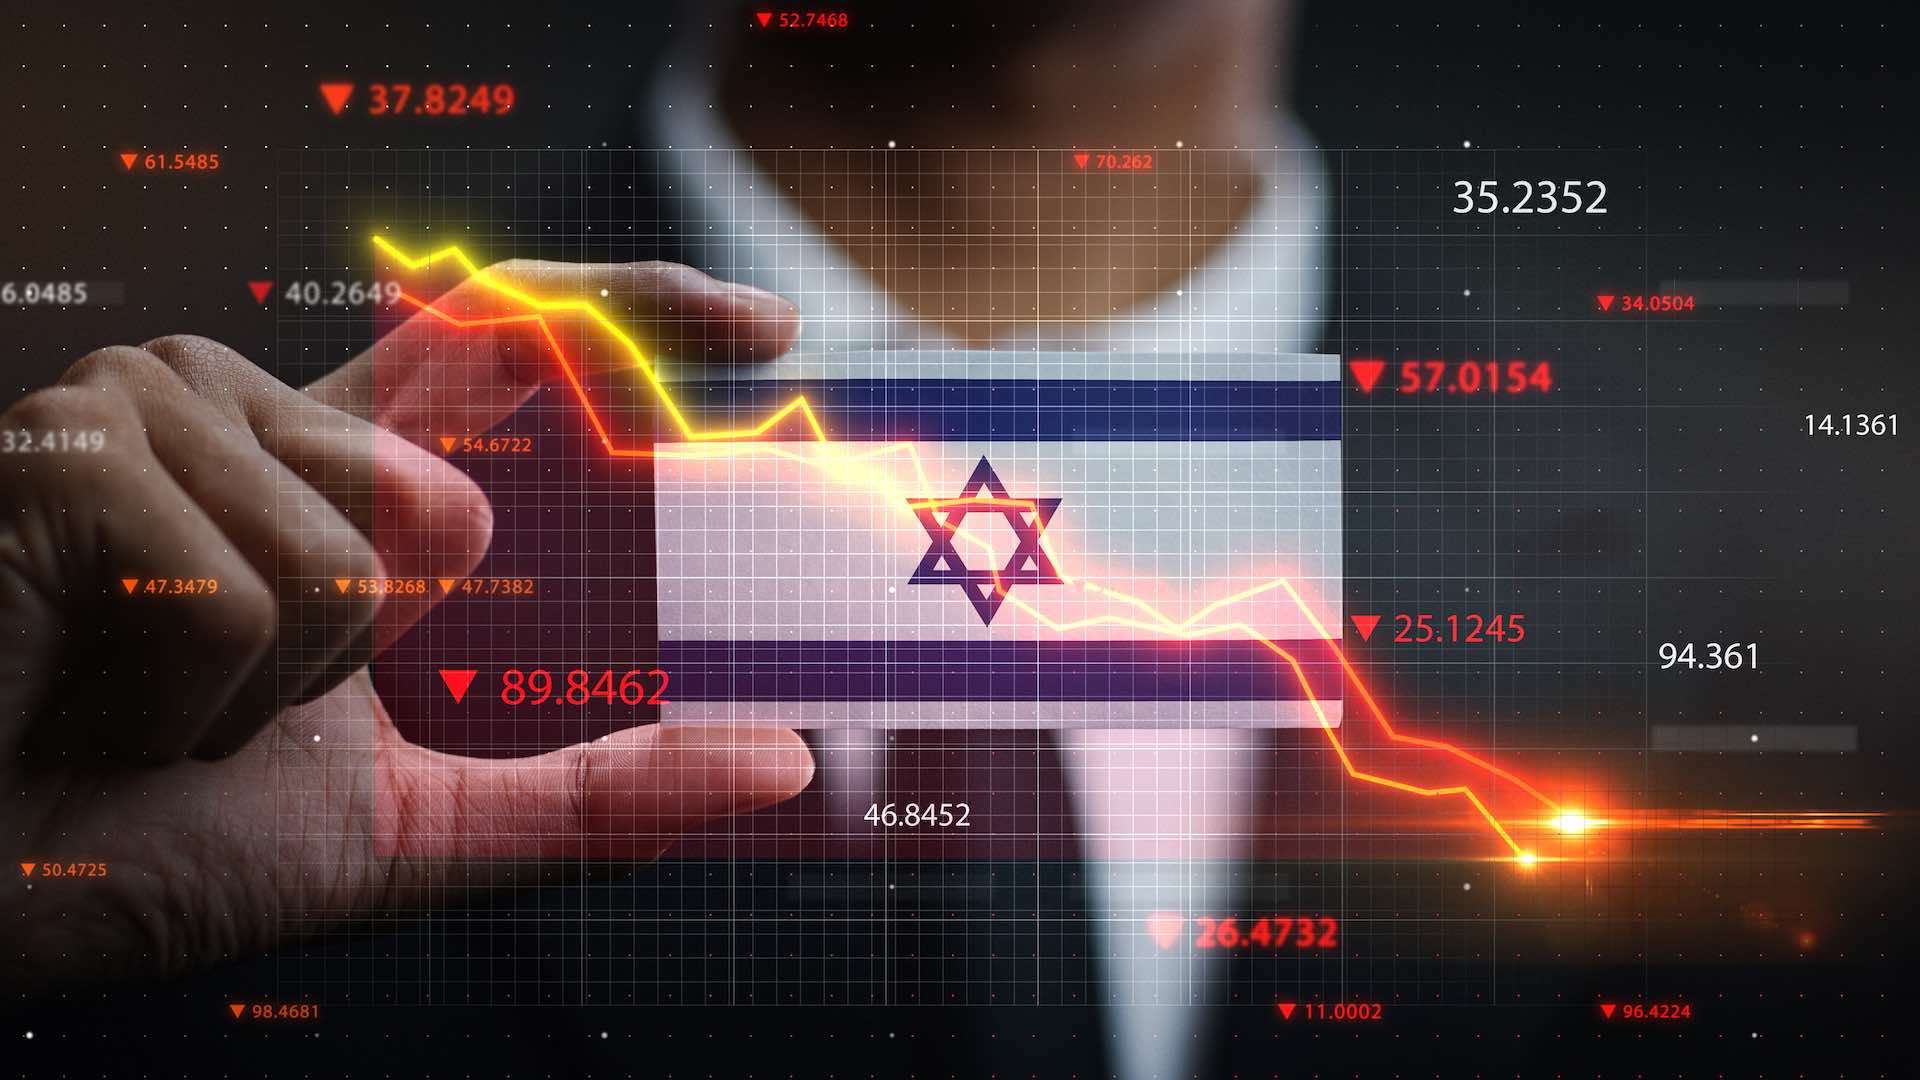 اقتصاد اسرائيل ينكمش بنسبة 20% في الربع الرابع بسبب تداعيات حرب غزة